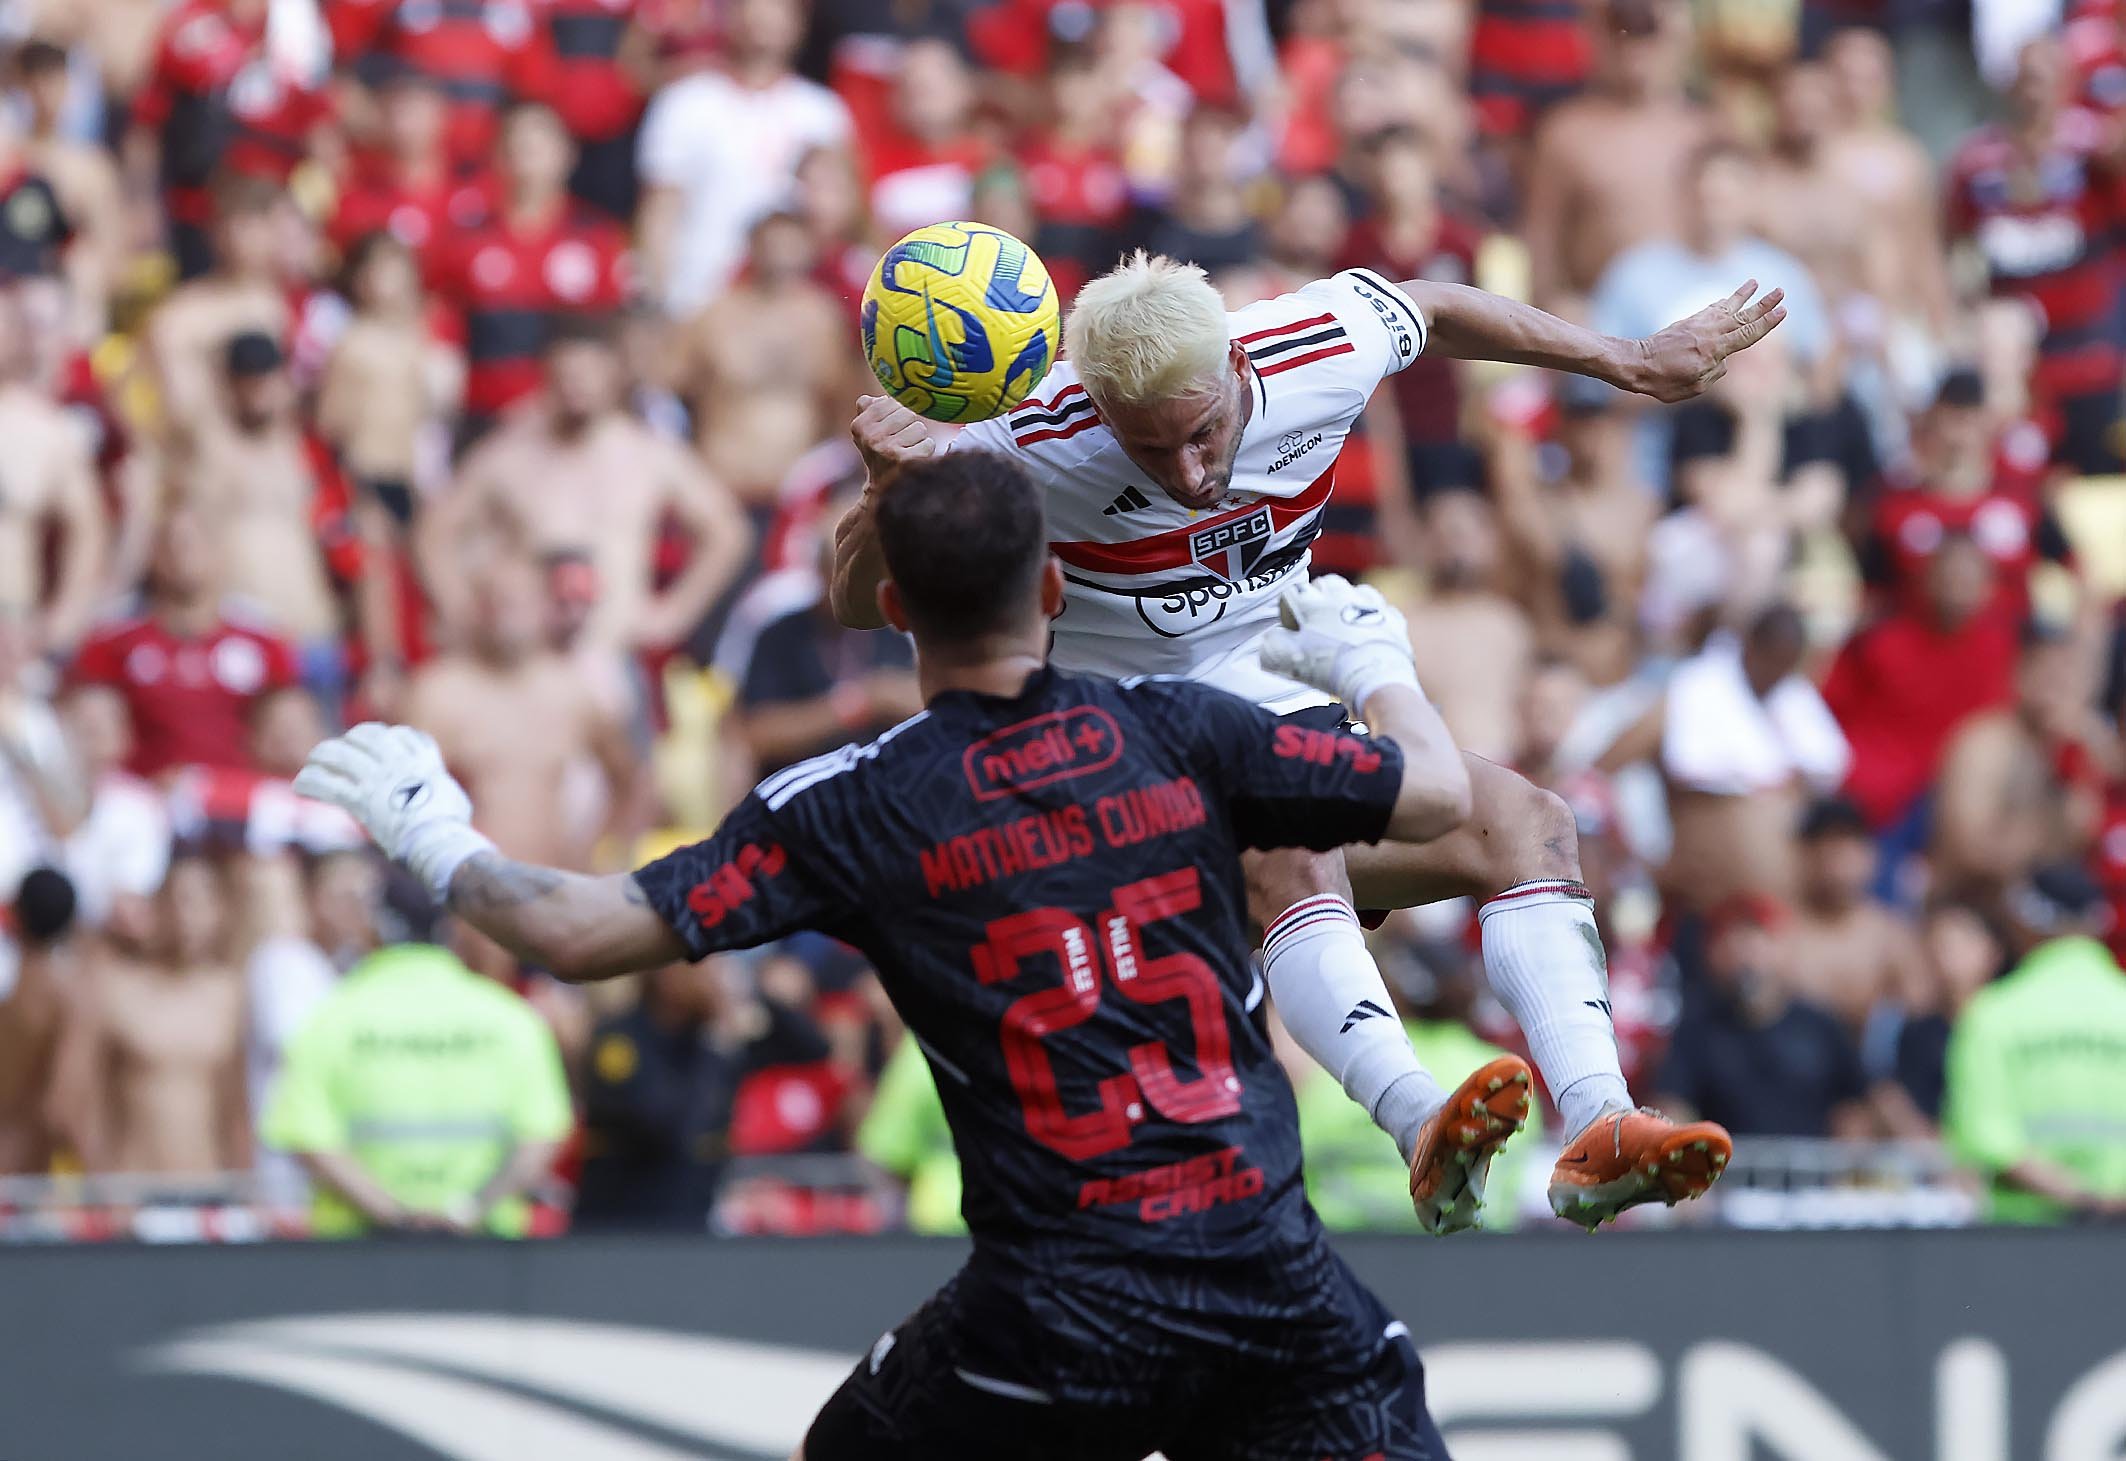 Gerson explica escolha de camisa 20 do Flamengo: 'Homenagem a Vini